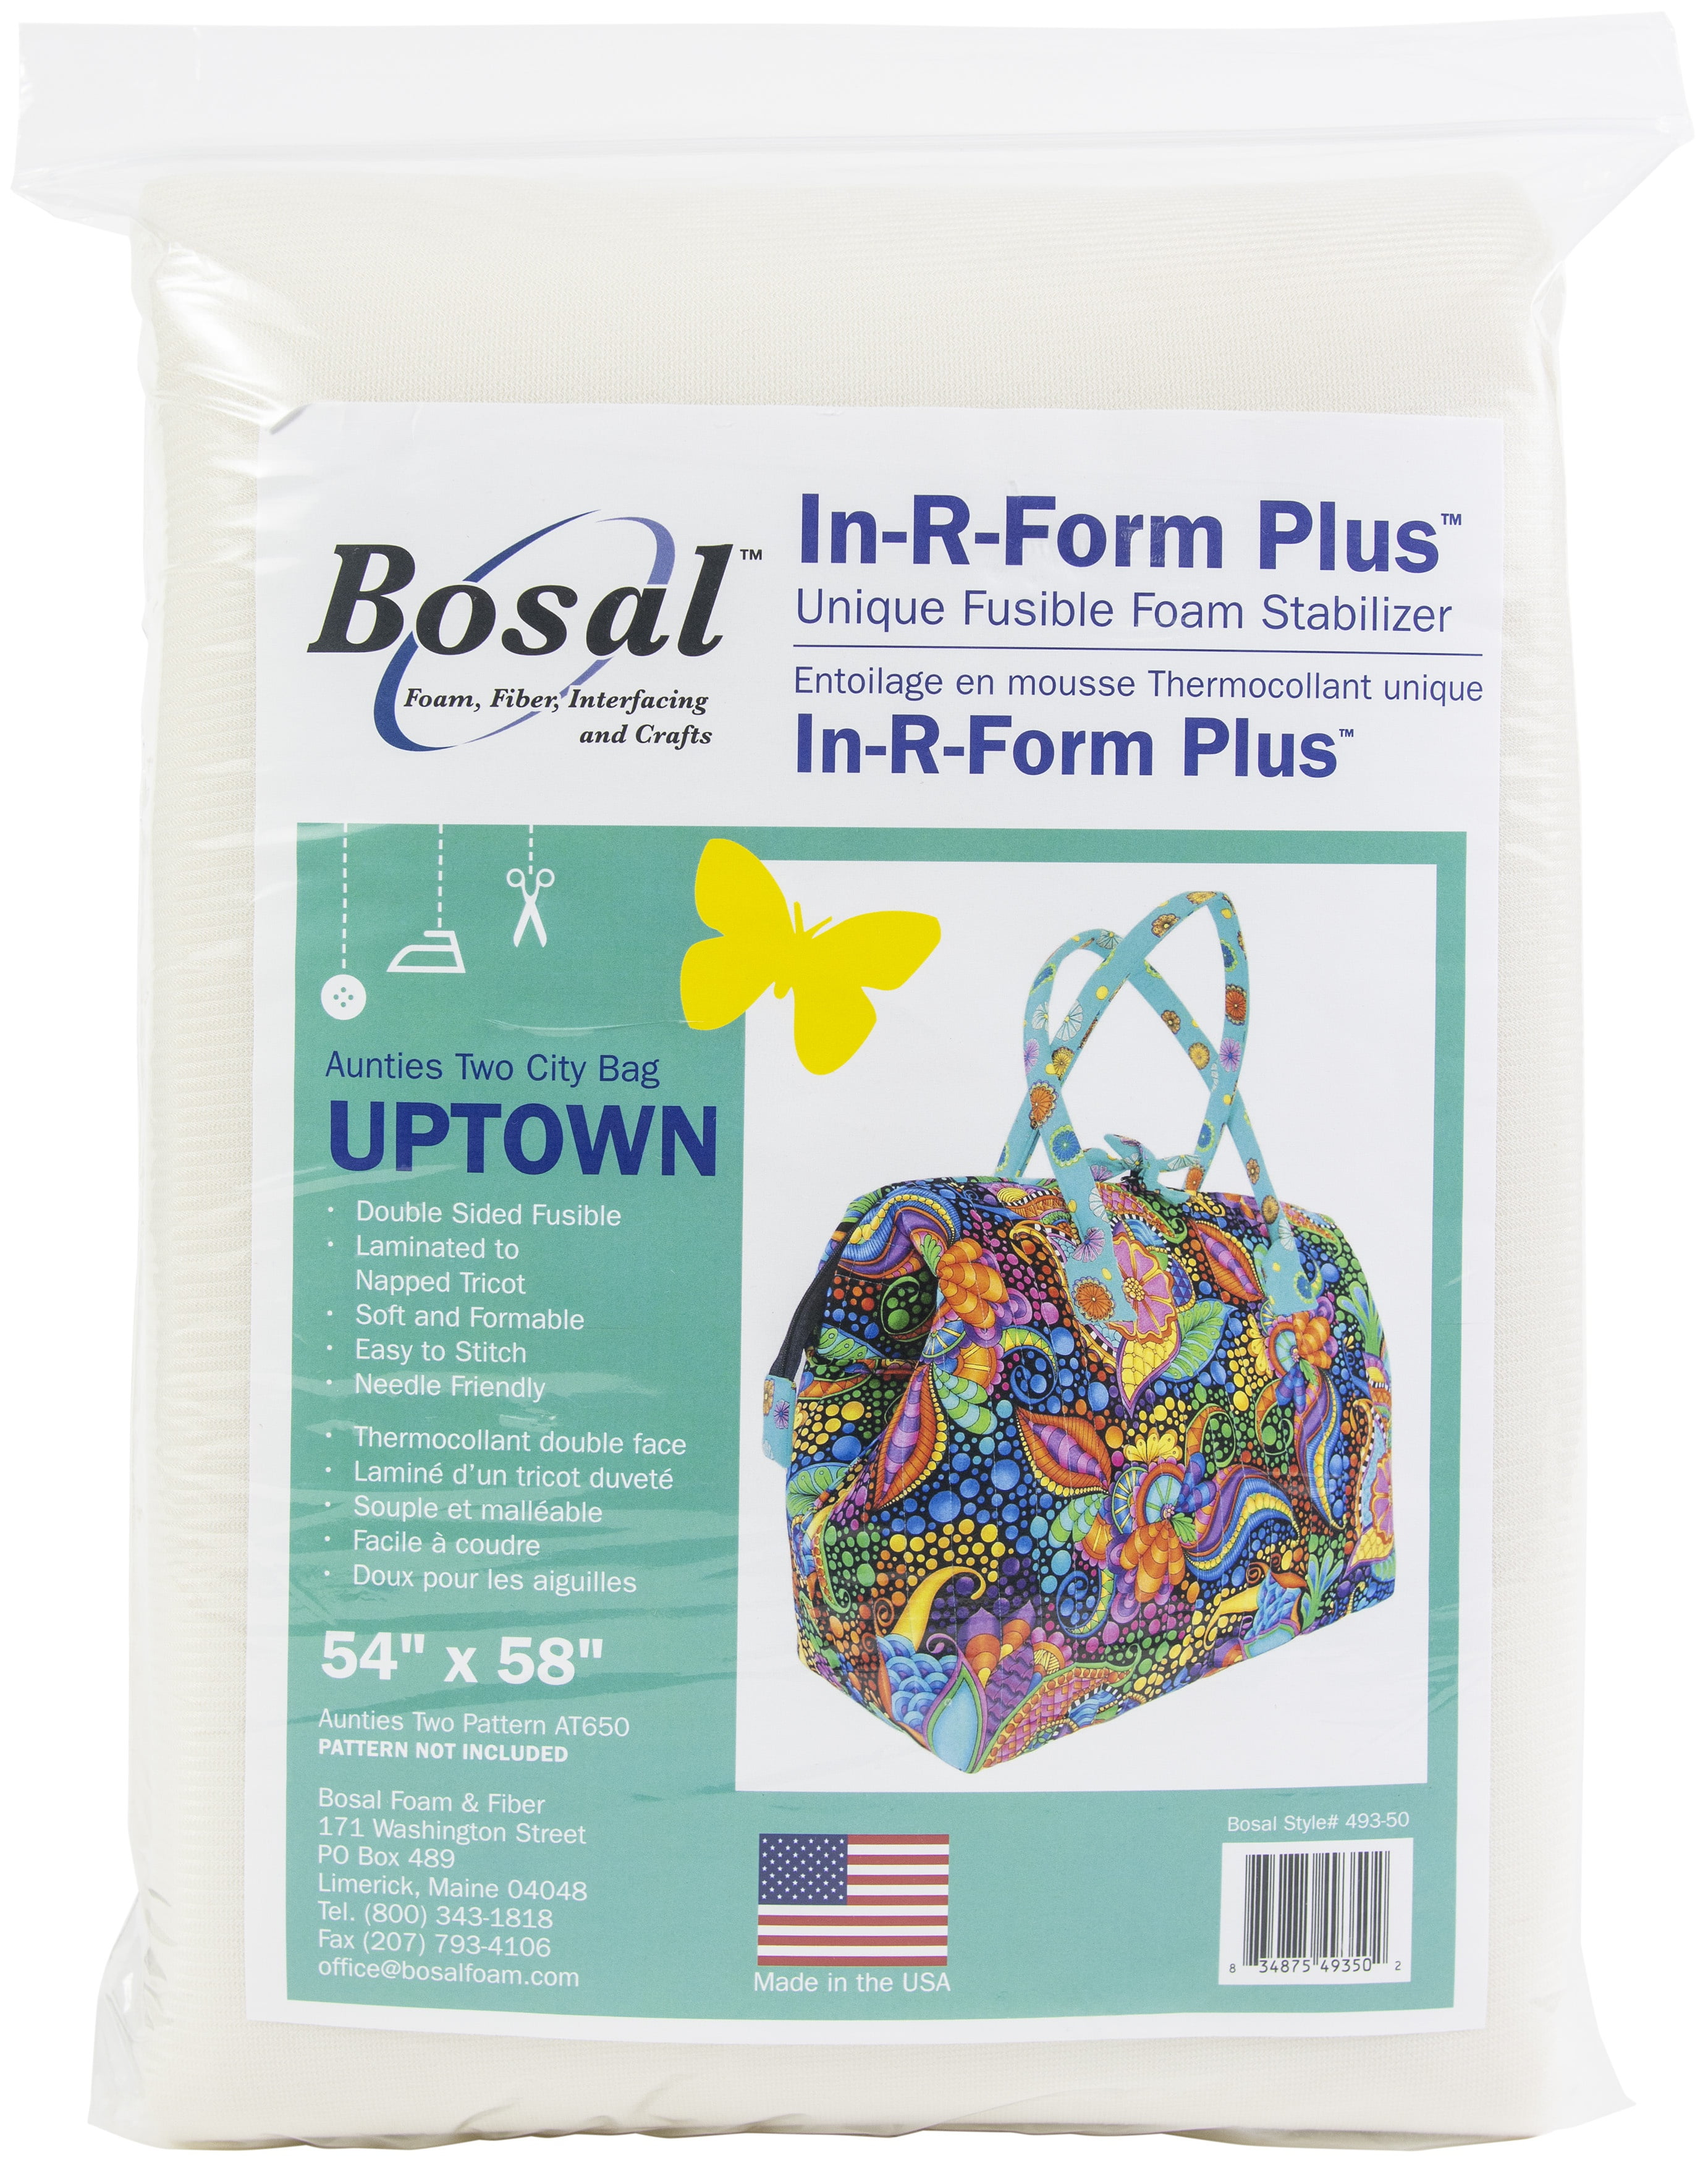 Bosal In-R-Form Plus Unique Fusible Foam Stabilizer-Midtown Bag 36x58